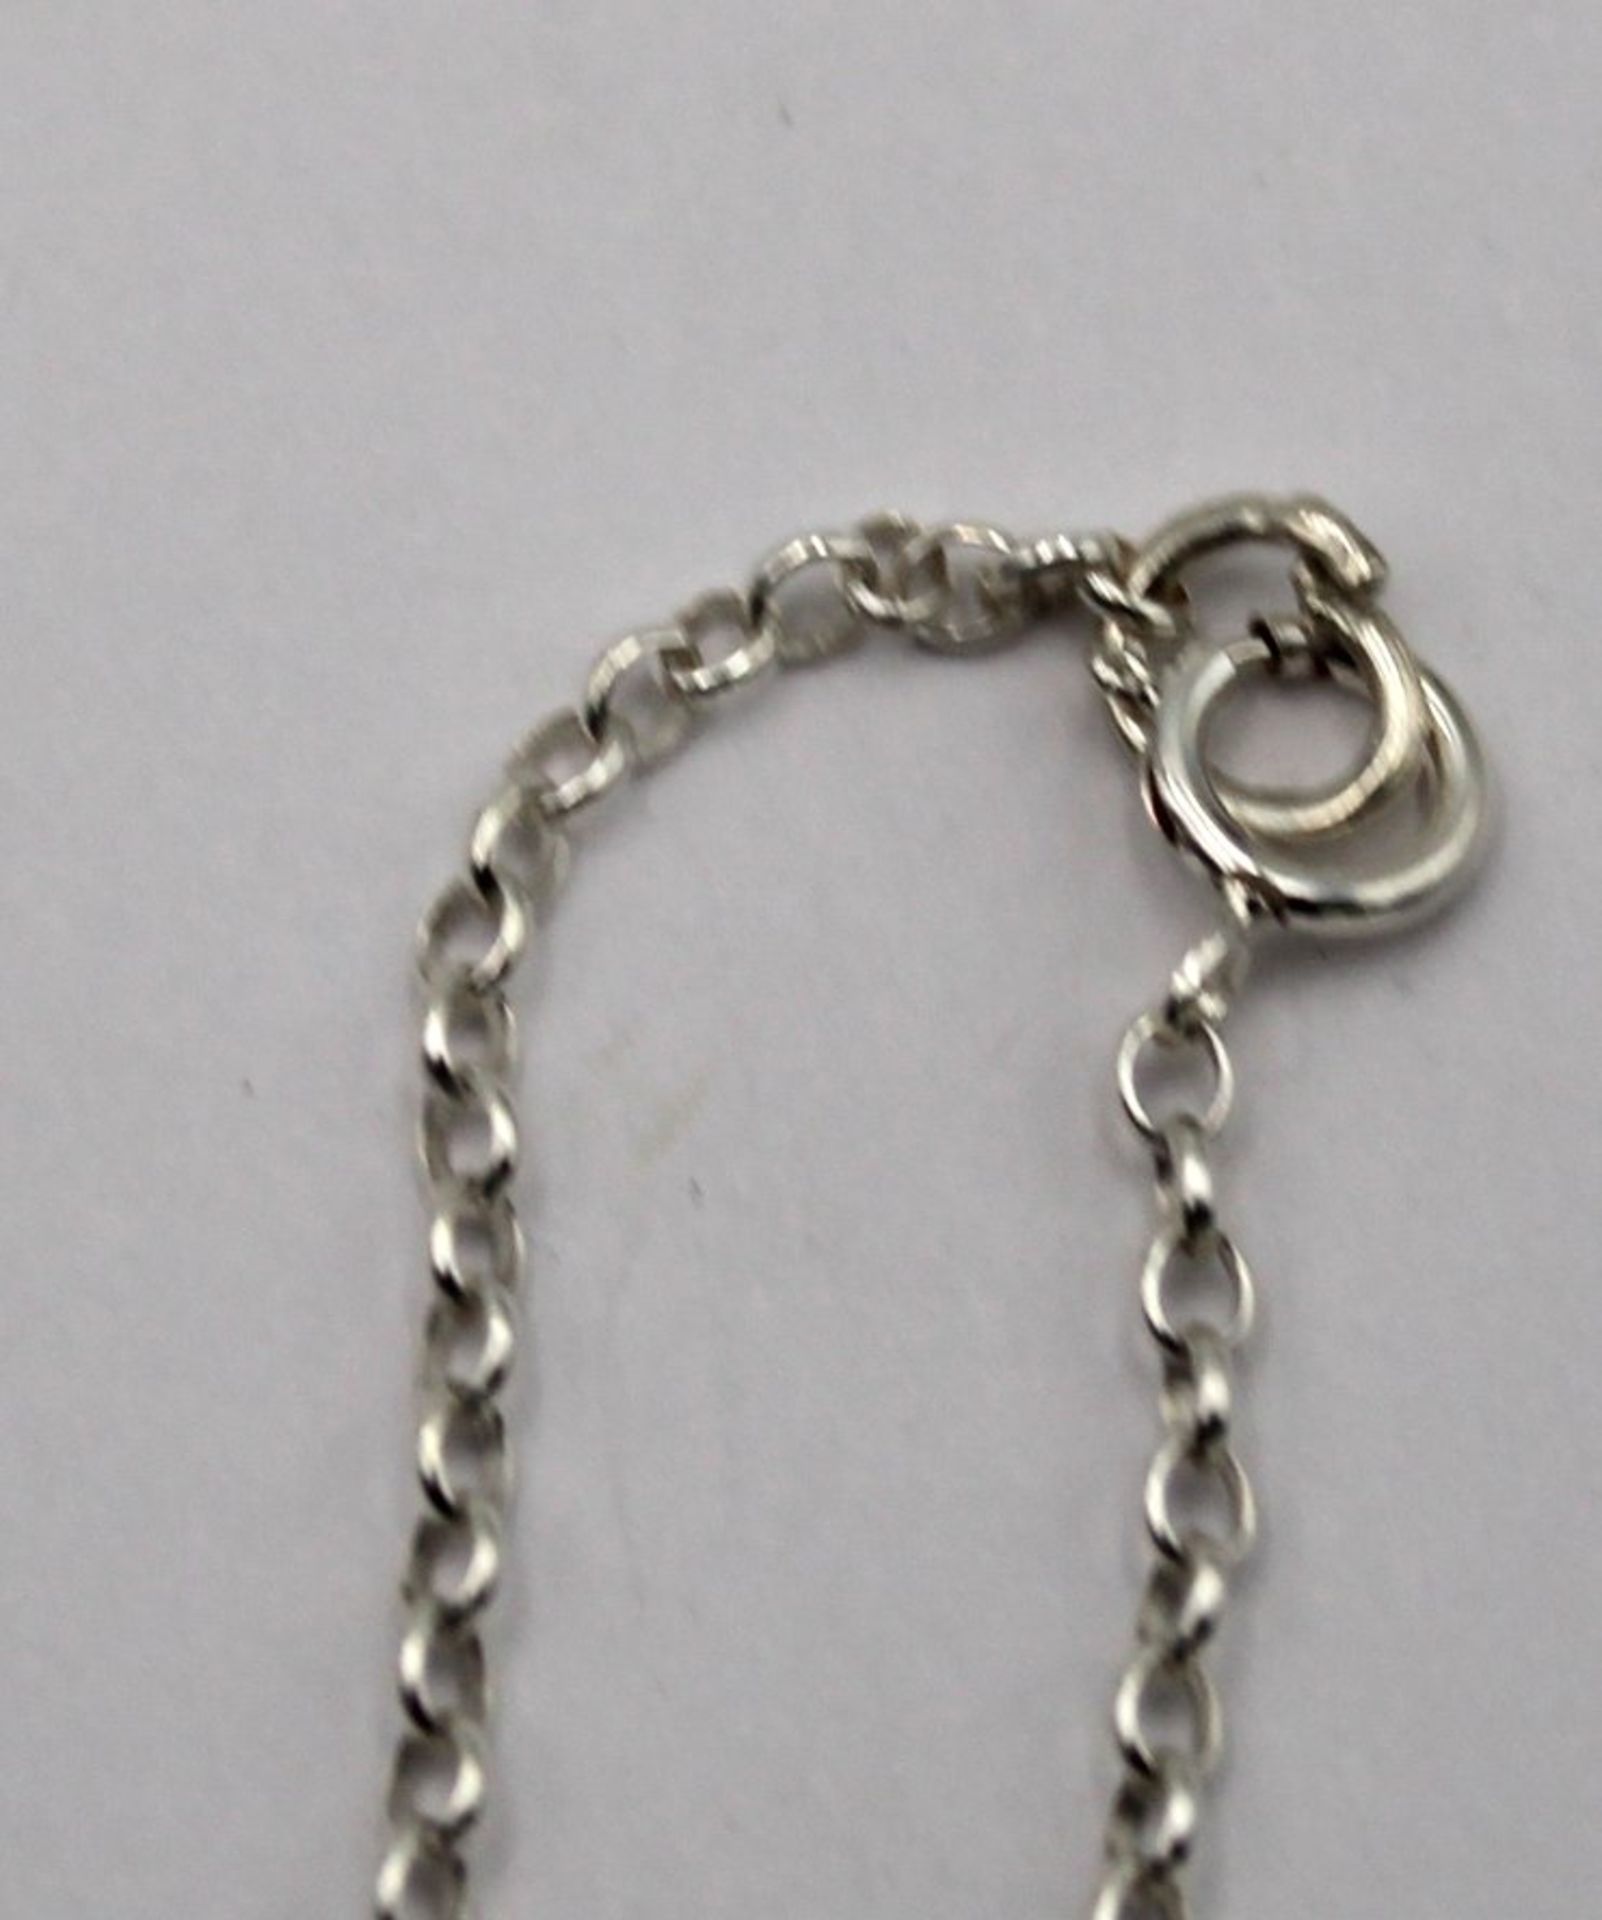 925er Silberkette mit Malachitanhänger, zus. ca. 6,4gr., Schließe defekt, ca. L-40cm  Anh. L-2cm. - Bild 3 aus 3